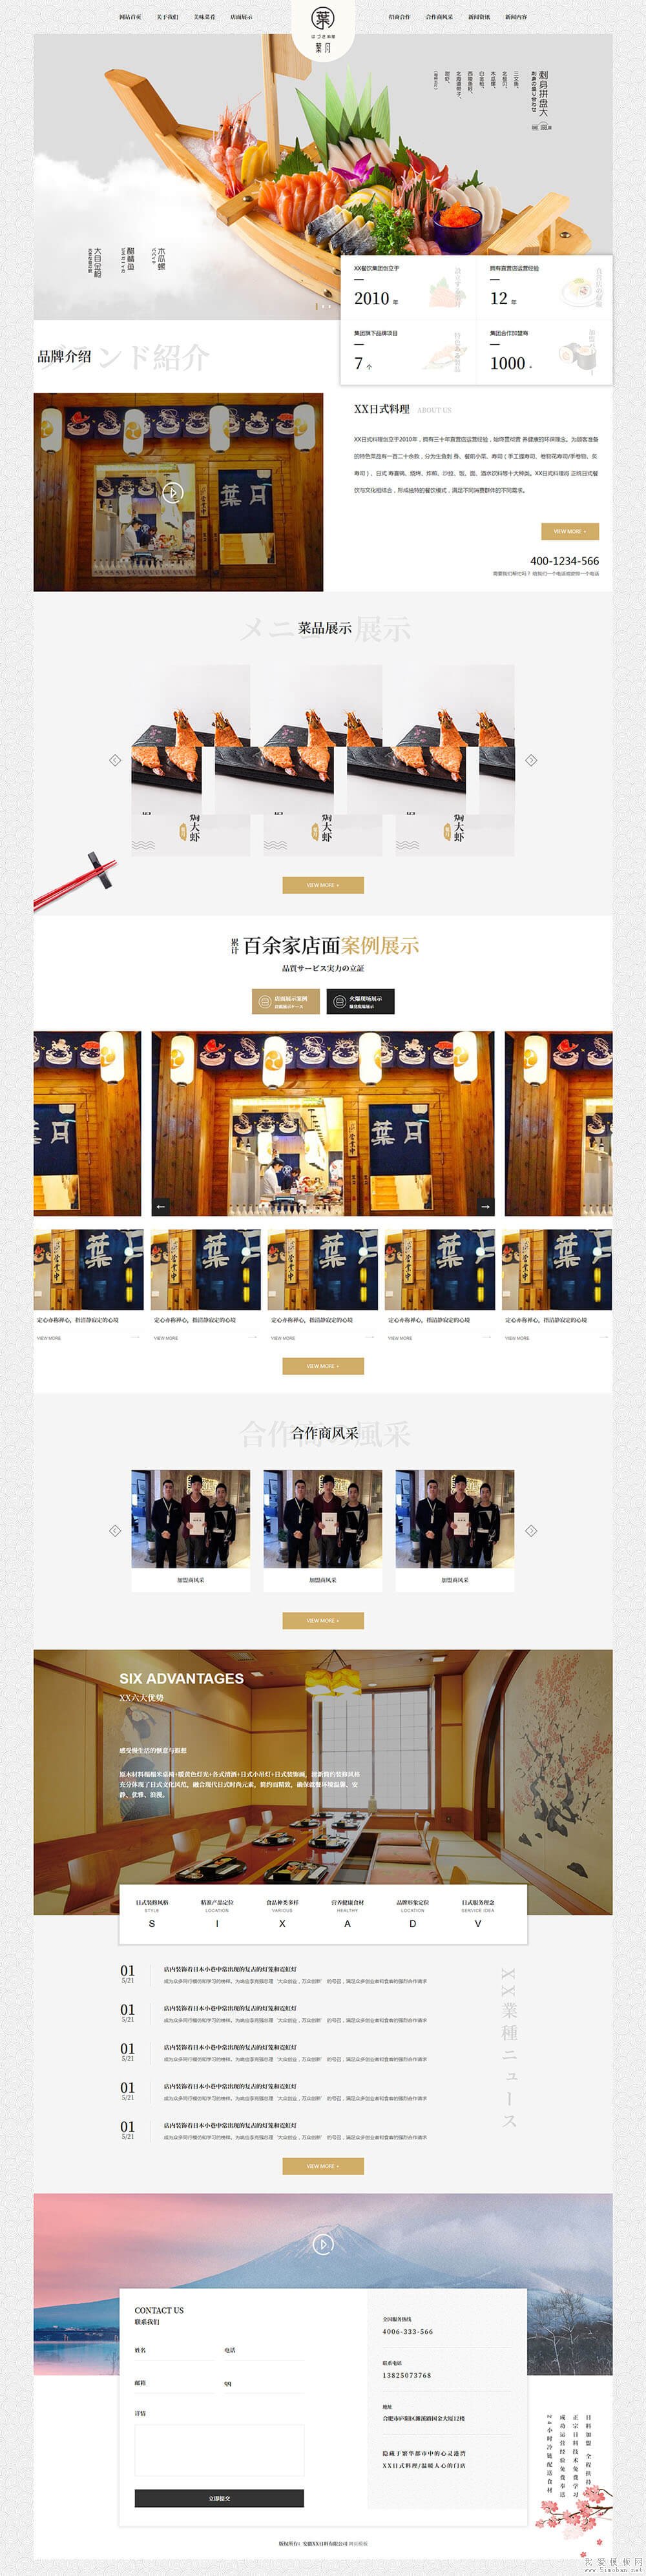 日式料理餐饮公司网站html模板